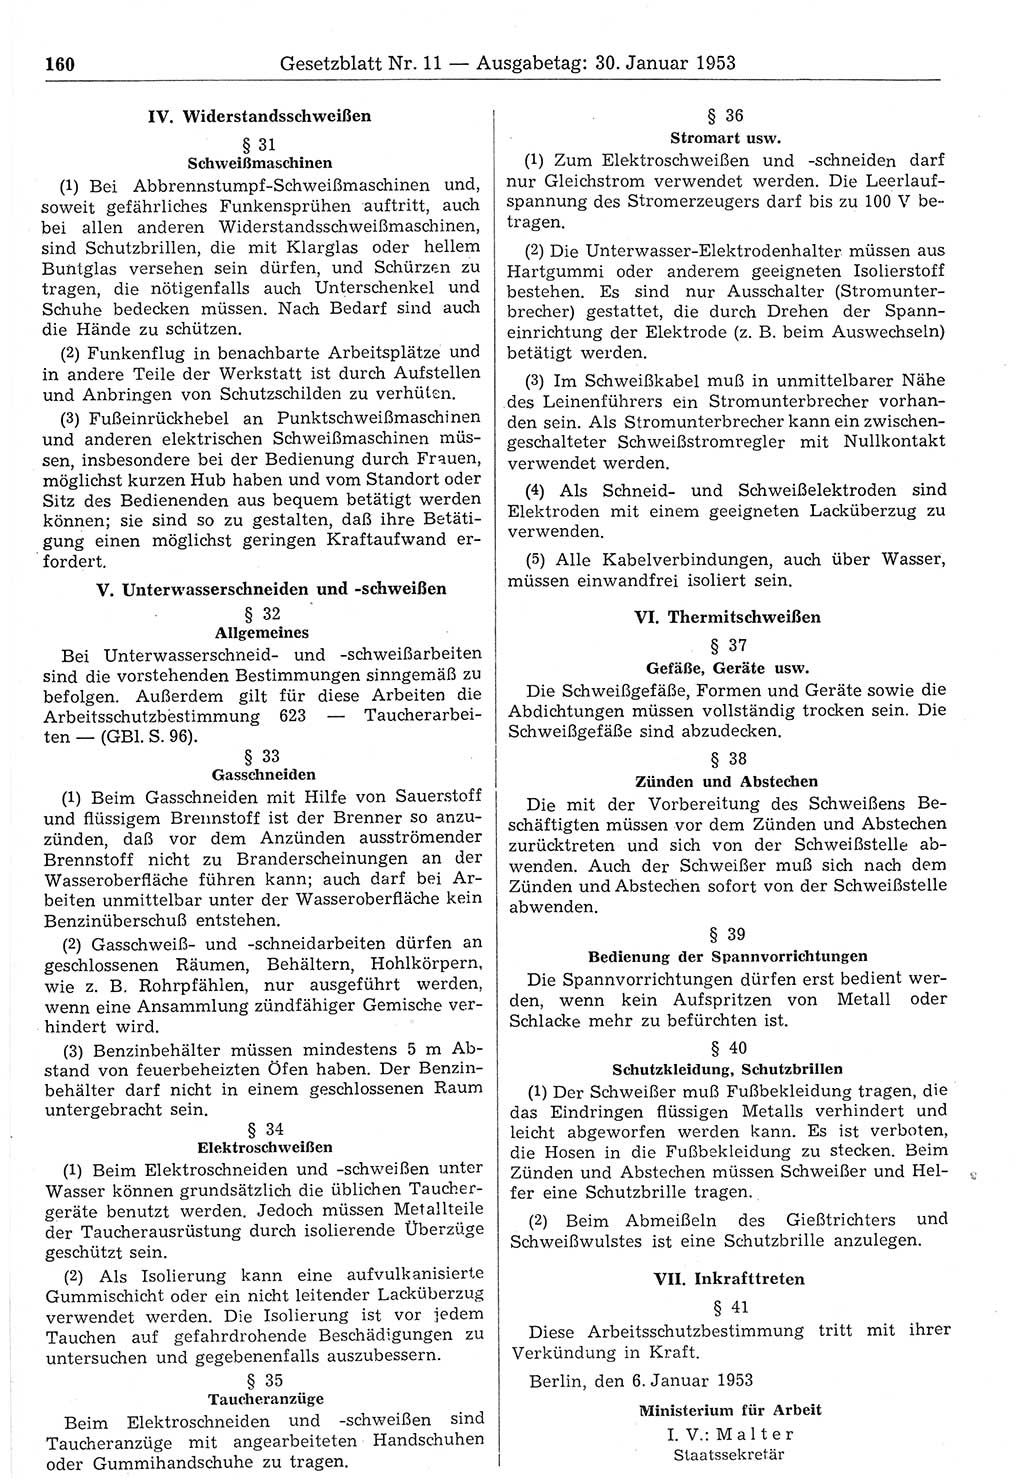 Gesetzblatt (GBl.) der Deutschen Demokratischen Republik (DDR) 1953, Seite 160 (GBl. DDR 1953, S. 160)